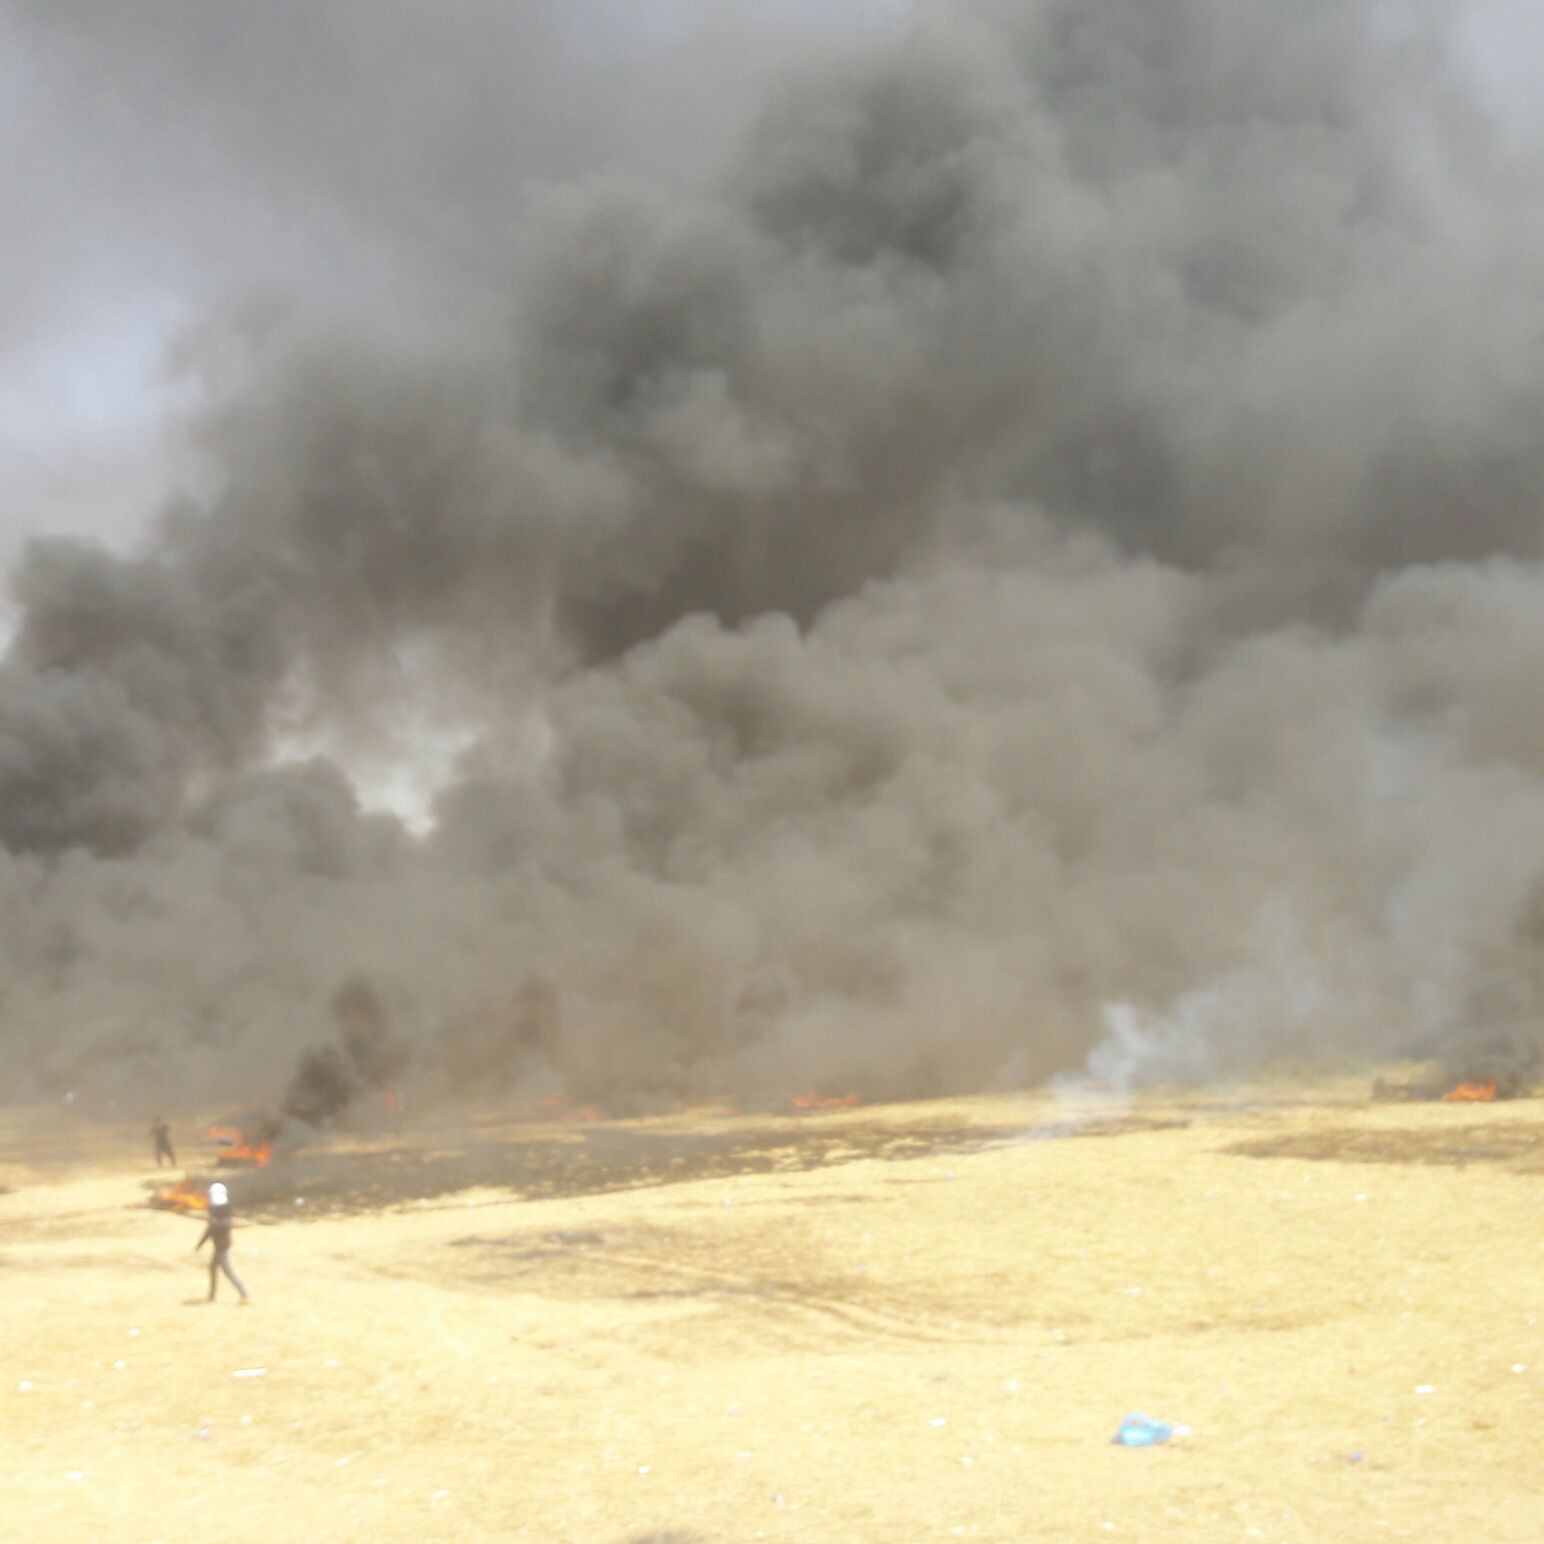 صور: 13 اصابة بالرصاص الحي بقمع مسيرات العودة بغزة